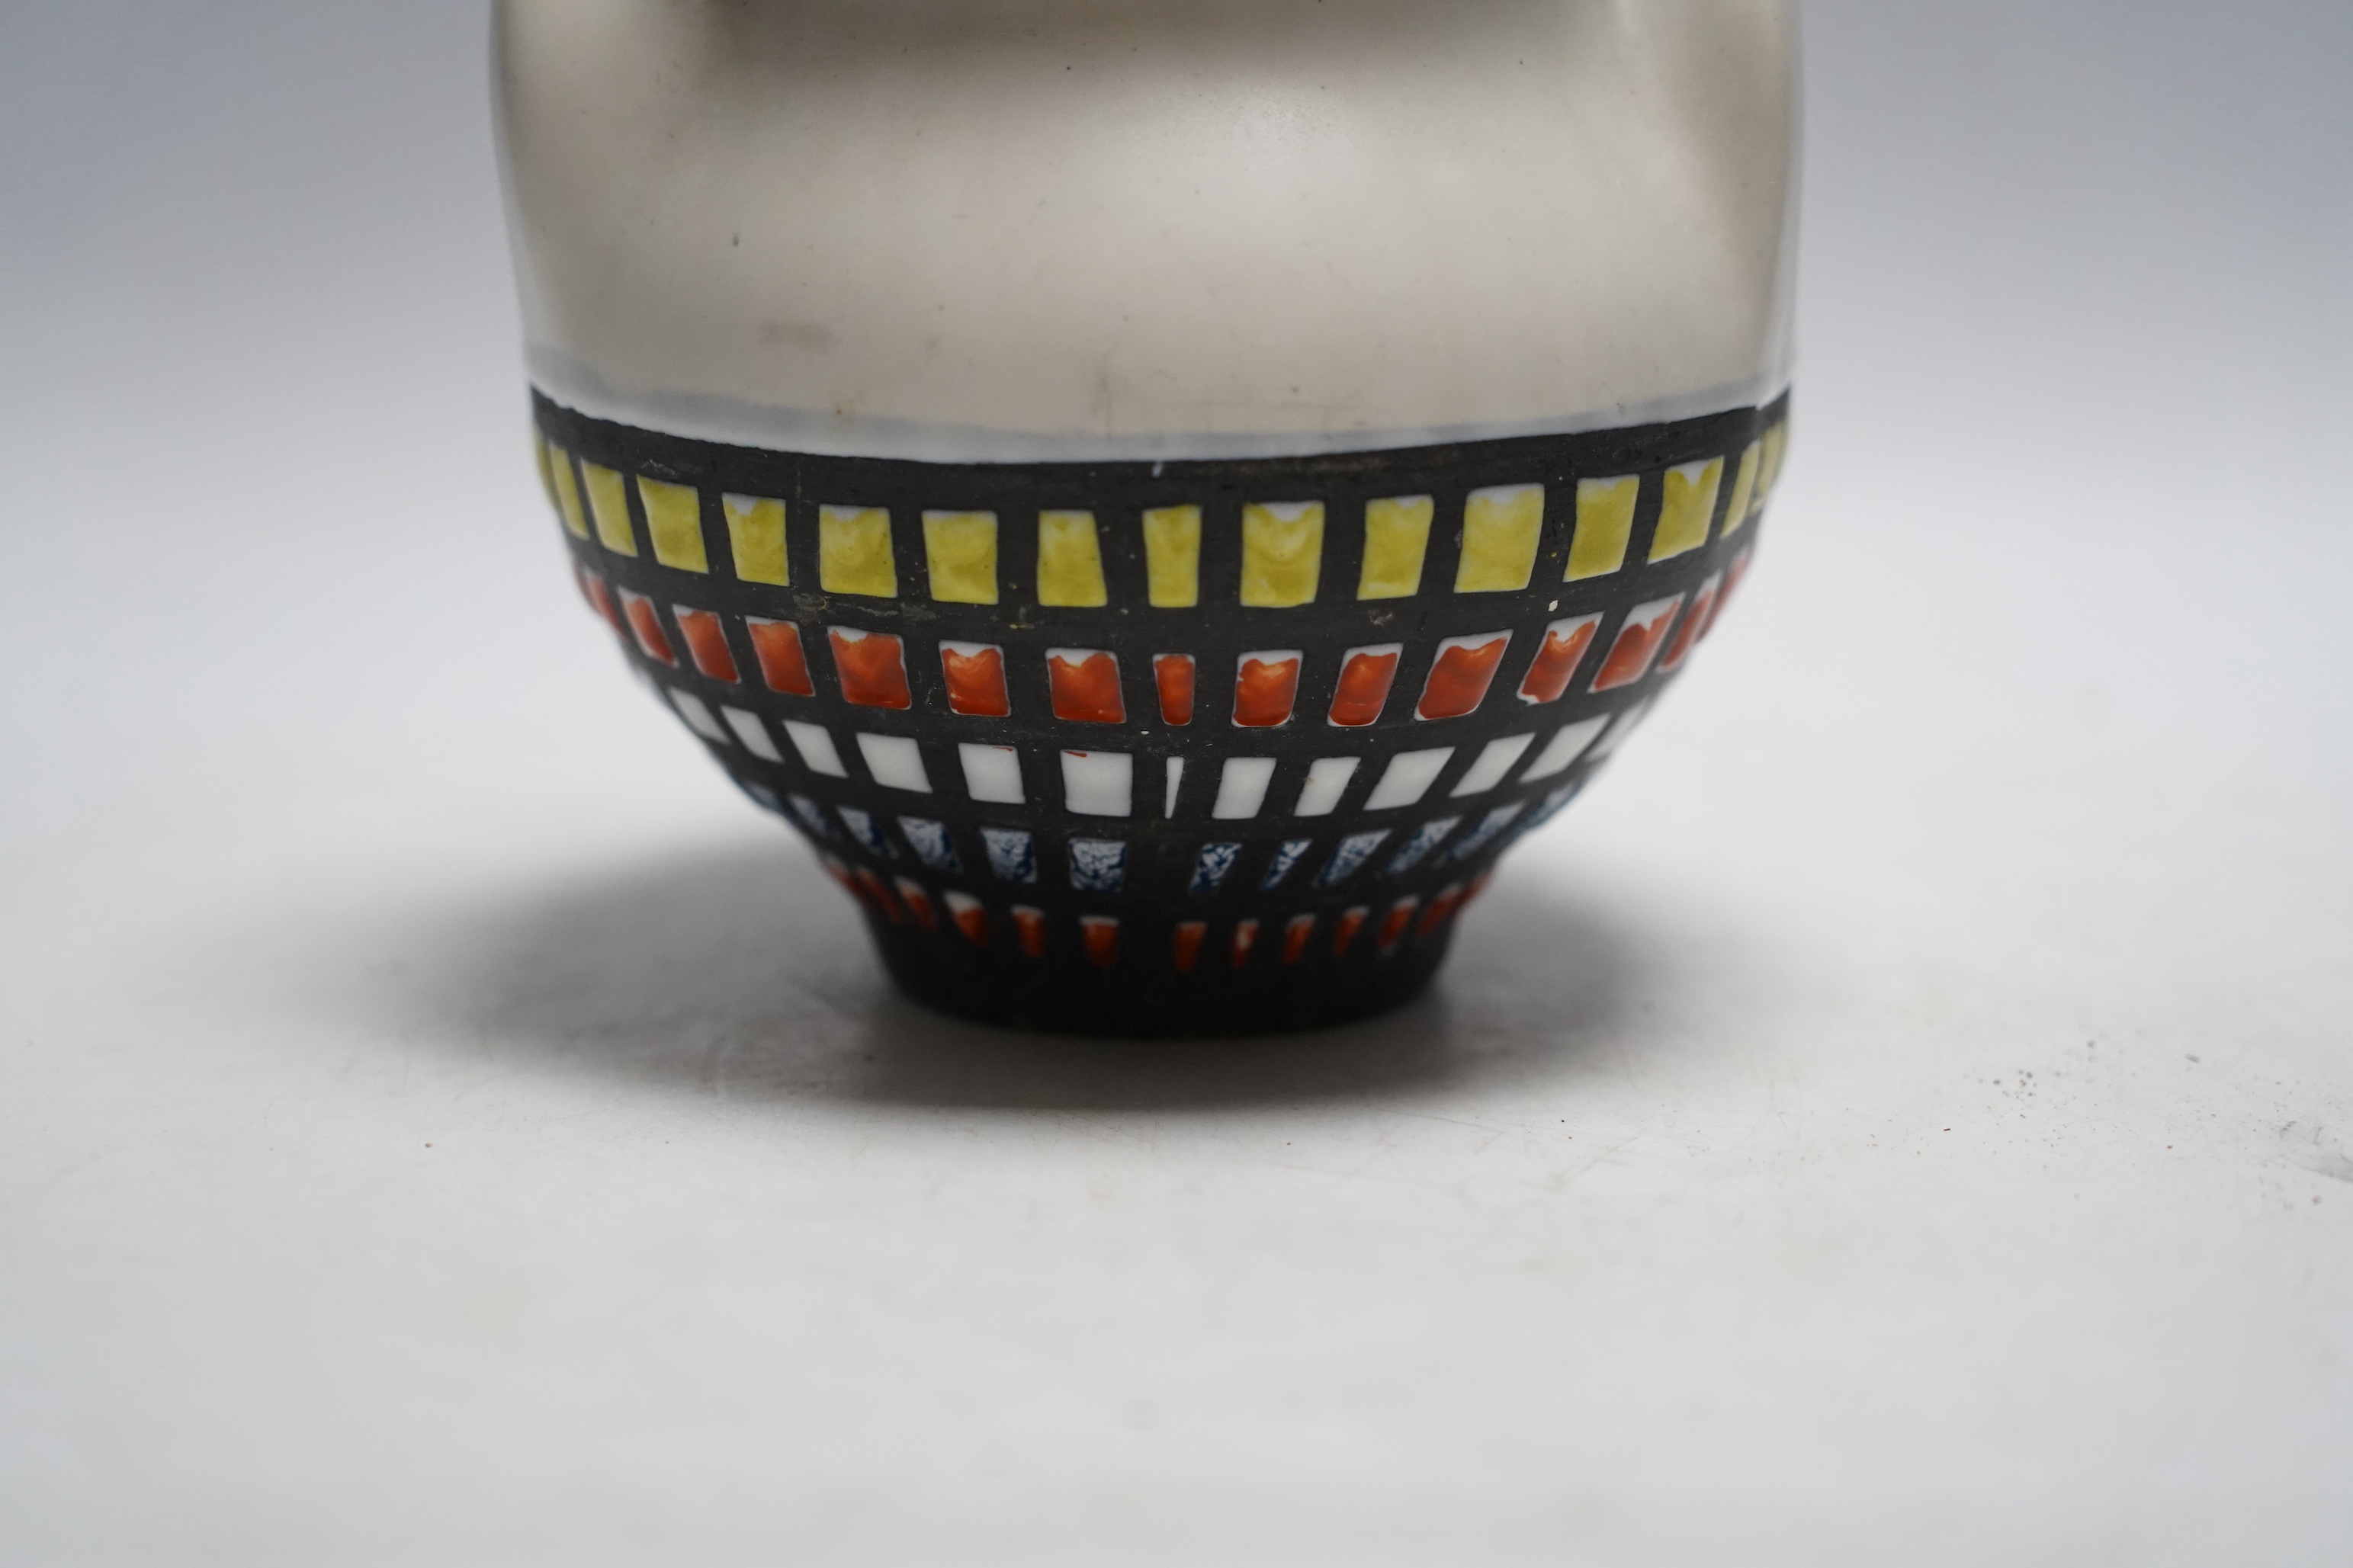 A Roger Capron (French, 1922-2006), a ceramic vase, signed to base ‘CAPRON FRANCE V2D’, 16cm